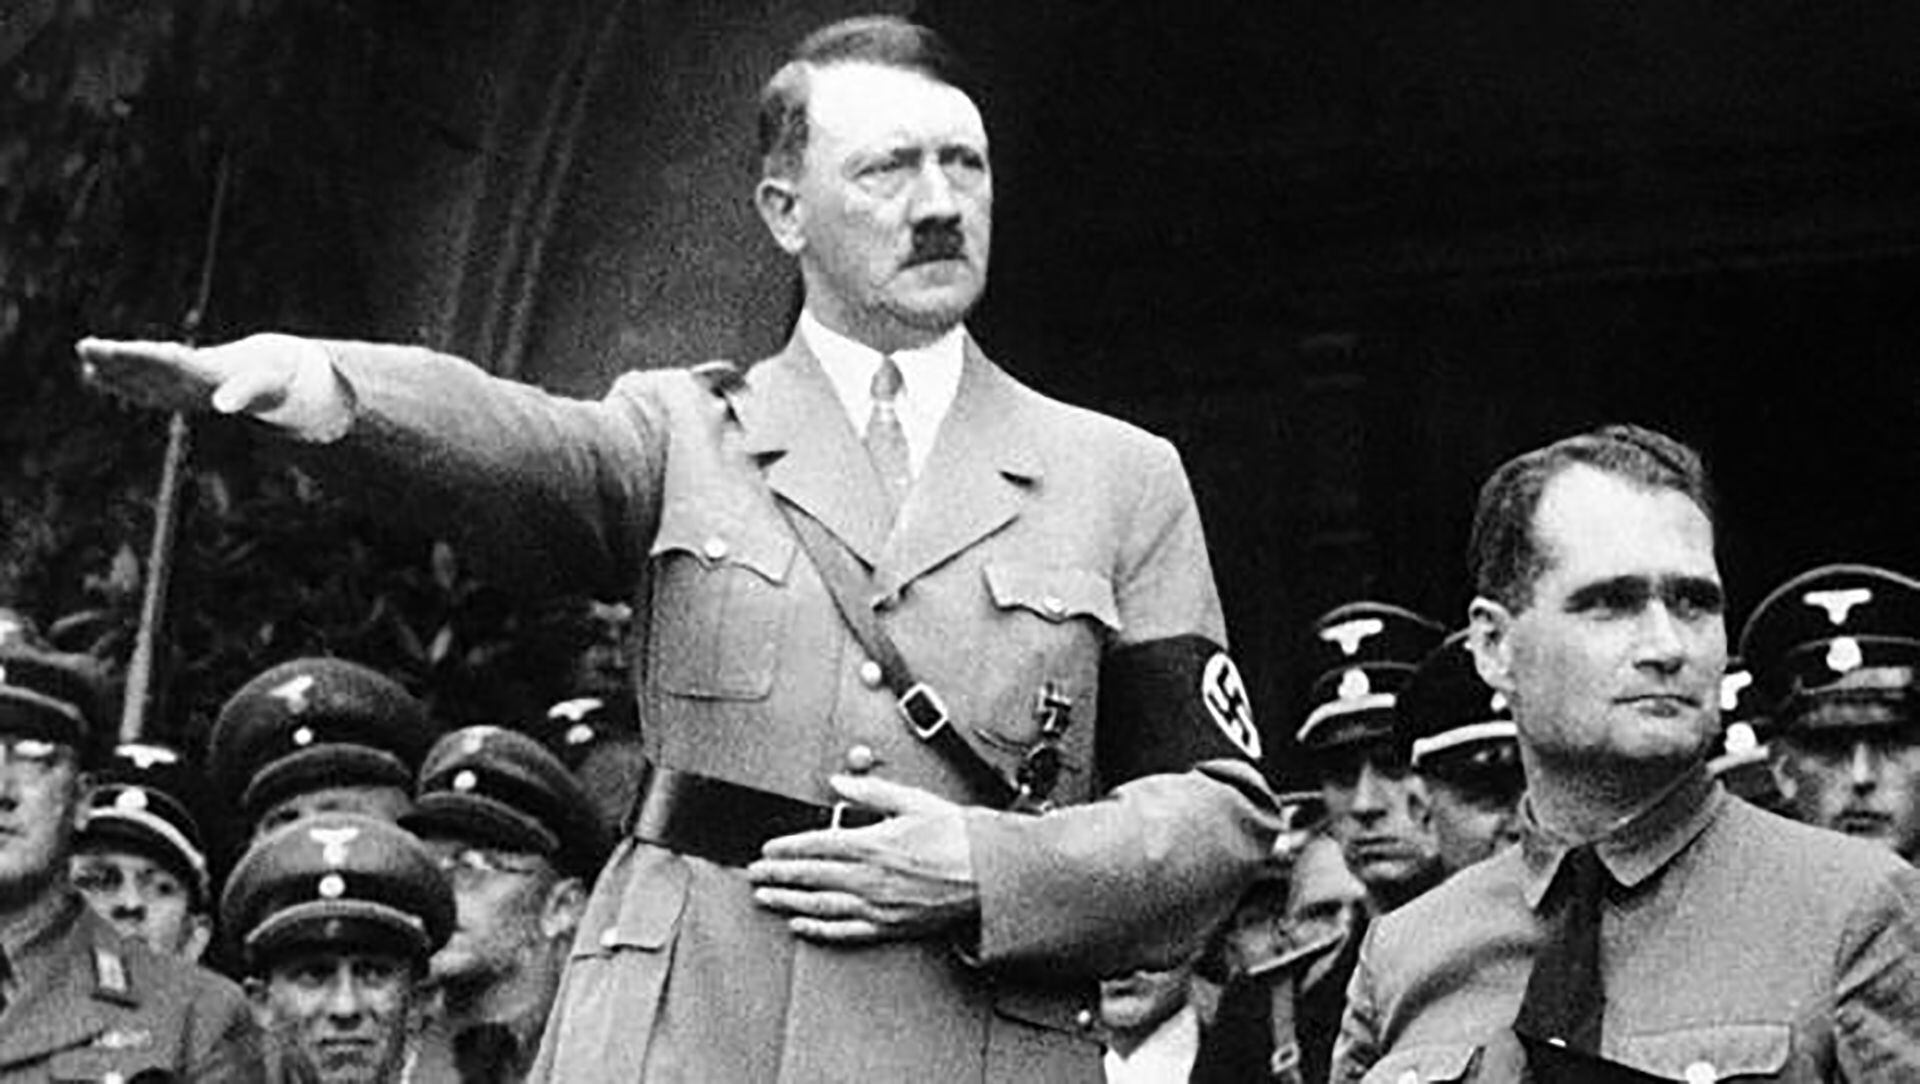 Hess acompañó a Hitler en su ascenso al poder. Ocupó distintos puestos, dirigió varios ministerios y siempre fue su hombre de confianza